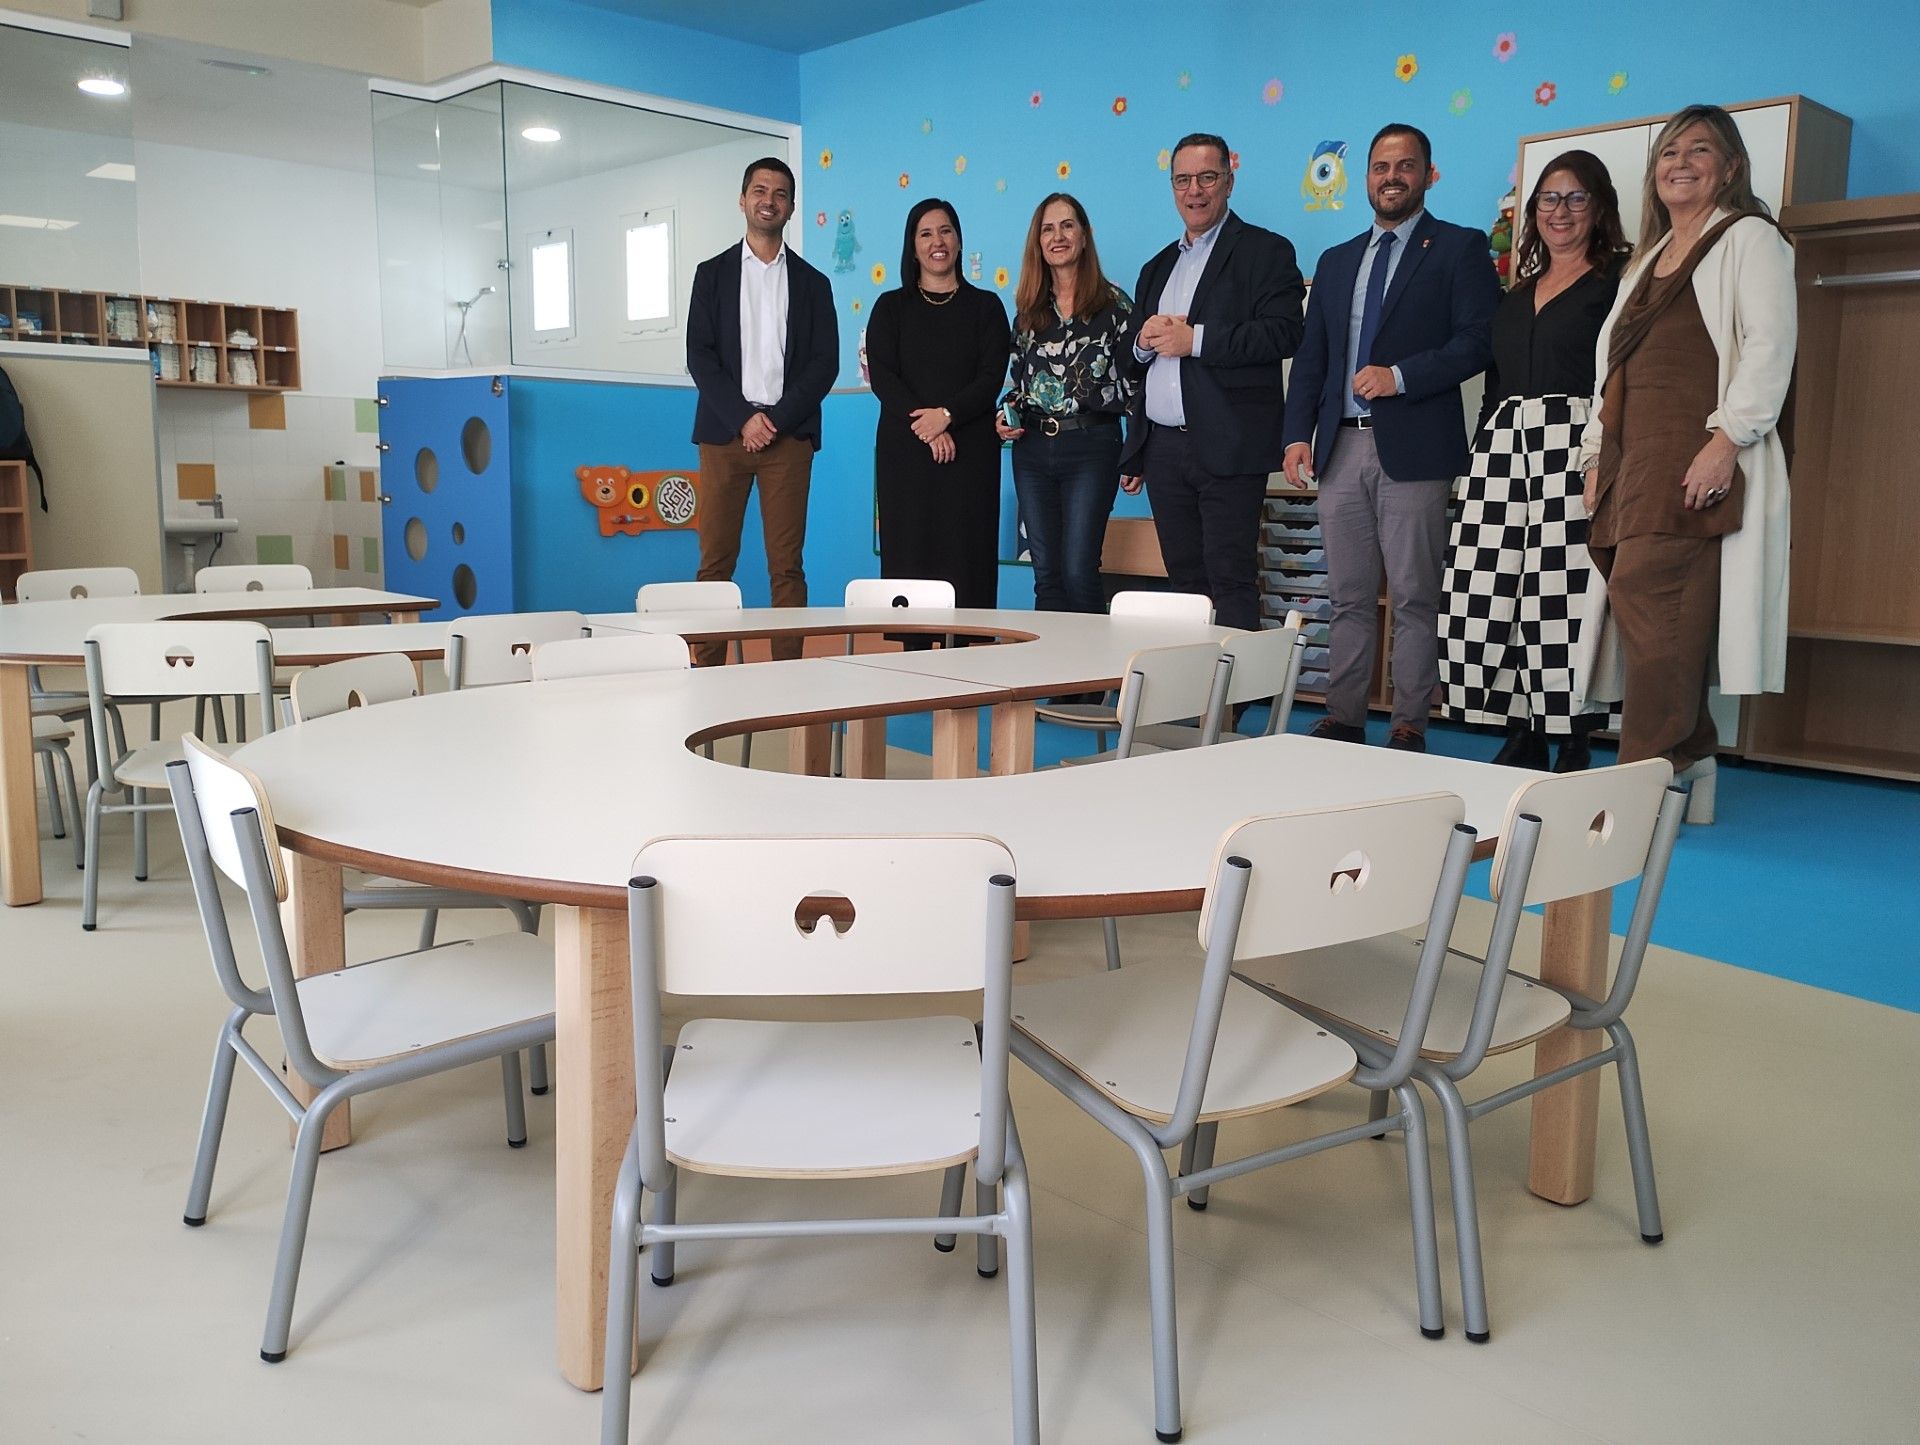 Visita a las nuevas instalaciones del colegio Nieves Toledo para escolares de 2 a 3 años, autoridades de Arrecife y consejería de Educación del Gobierno de Canarias